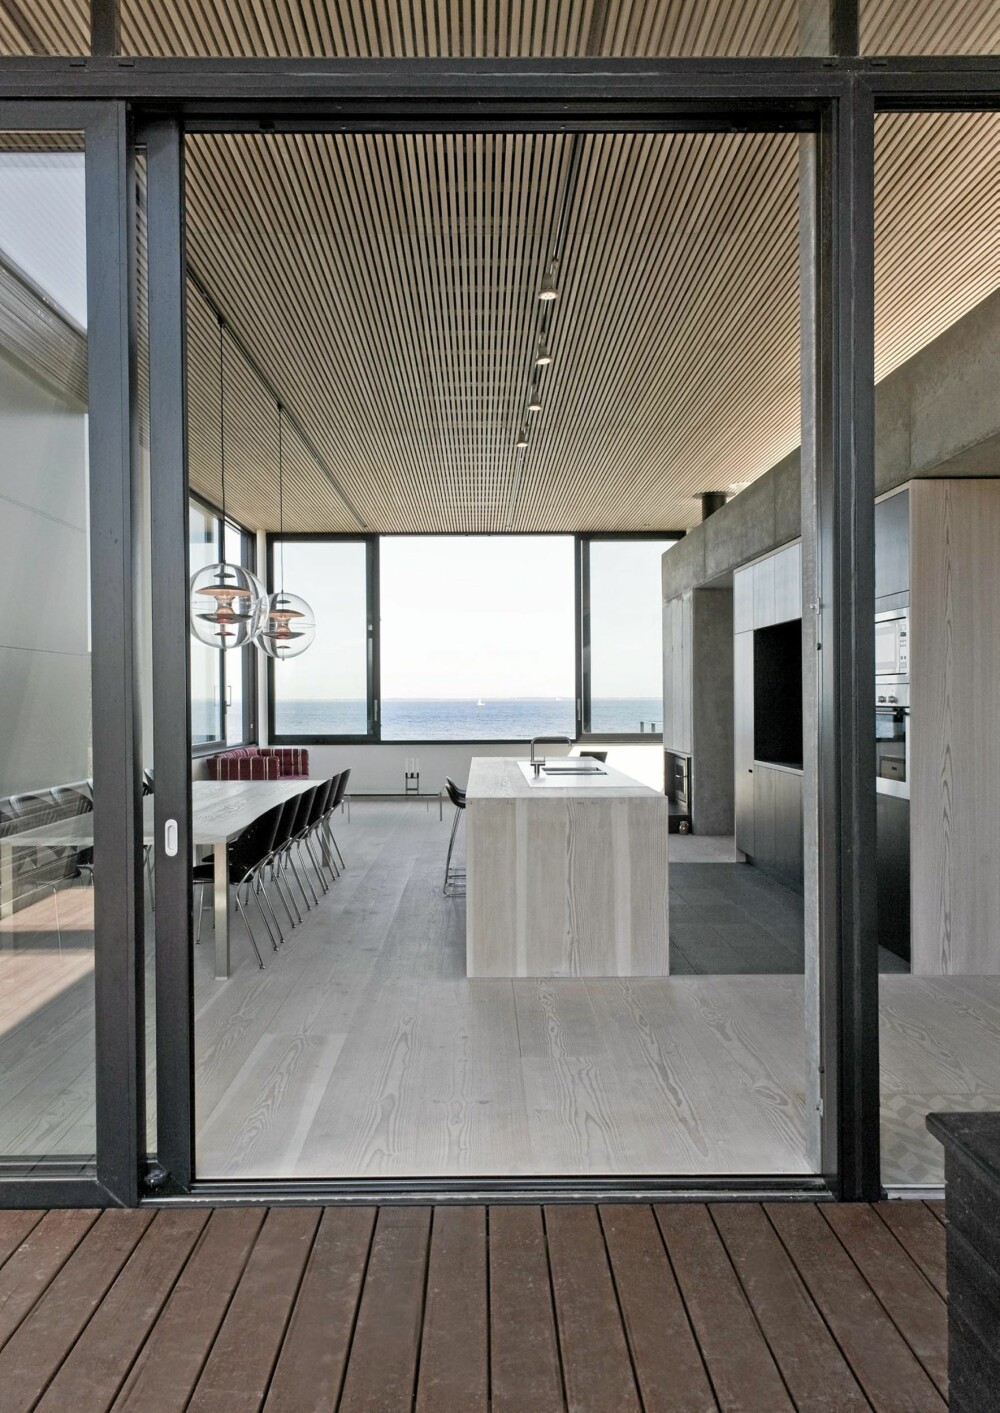 ET DEILIG STYKKE DANMARK: Fra det kombinerte stue- og kjøkkenrommet har du enorm utsikt over stranden og havet.